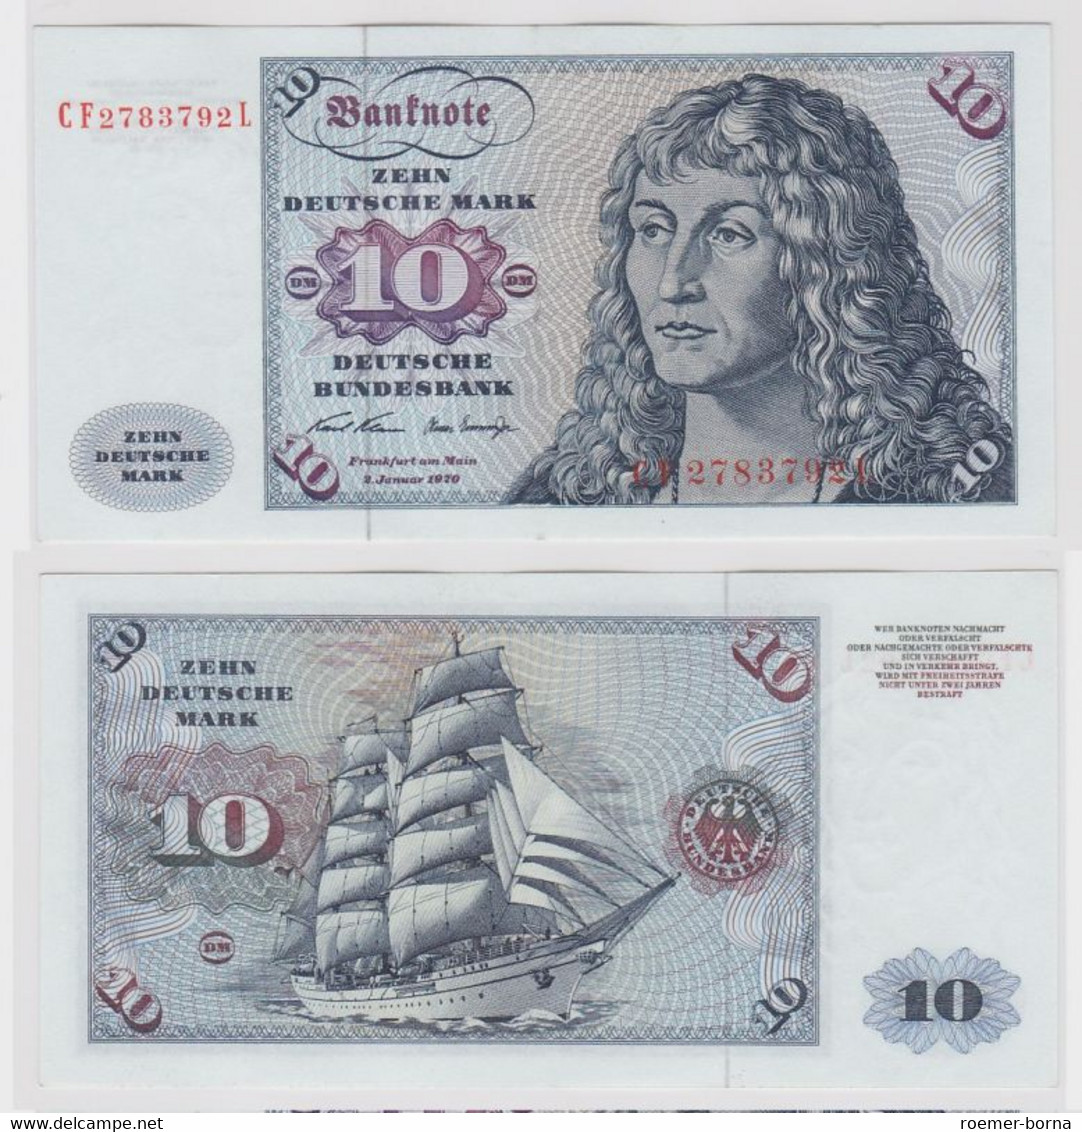 T147455 Banknote 10 DM Deutsche Mark Ro. 270b Schein 2.Jan. 1970 KN CF 2783792 L - 10 DM